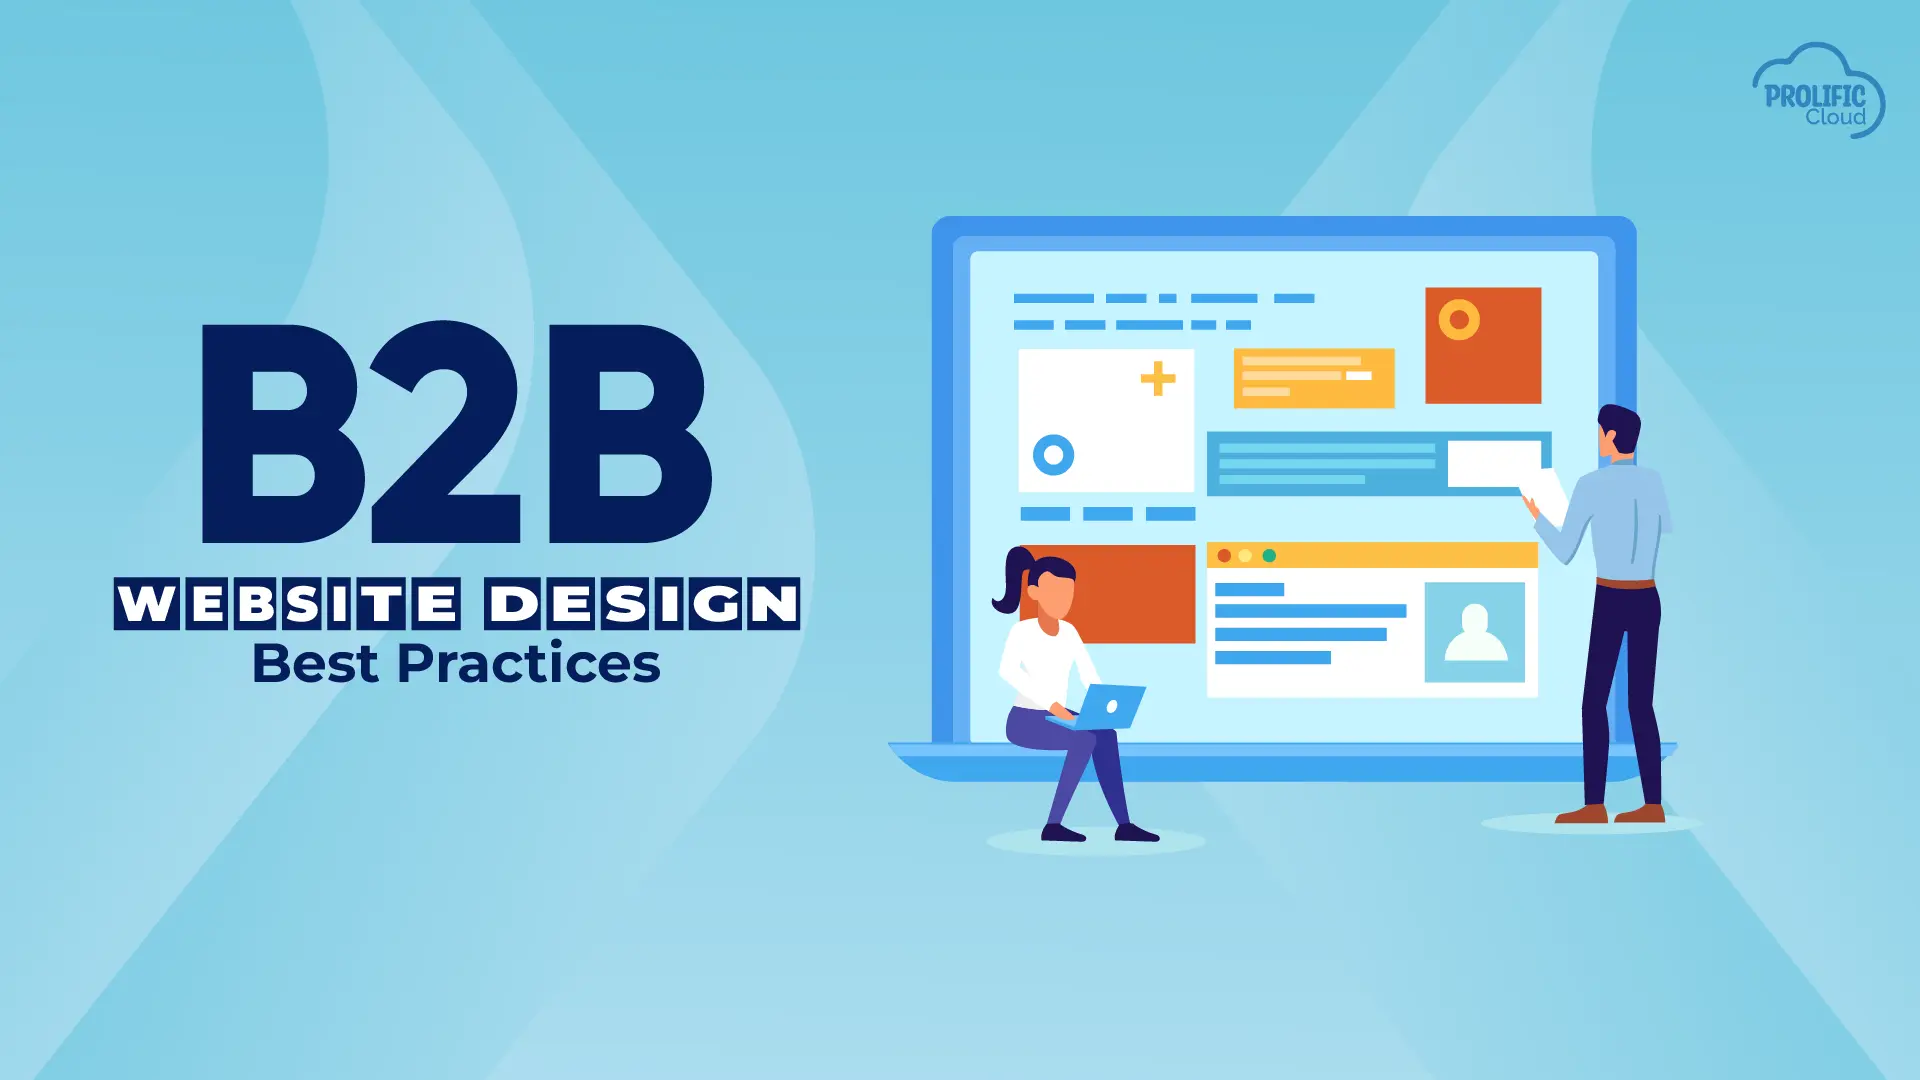 B2B website design best practices